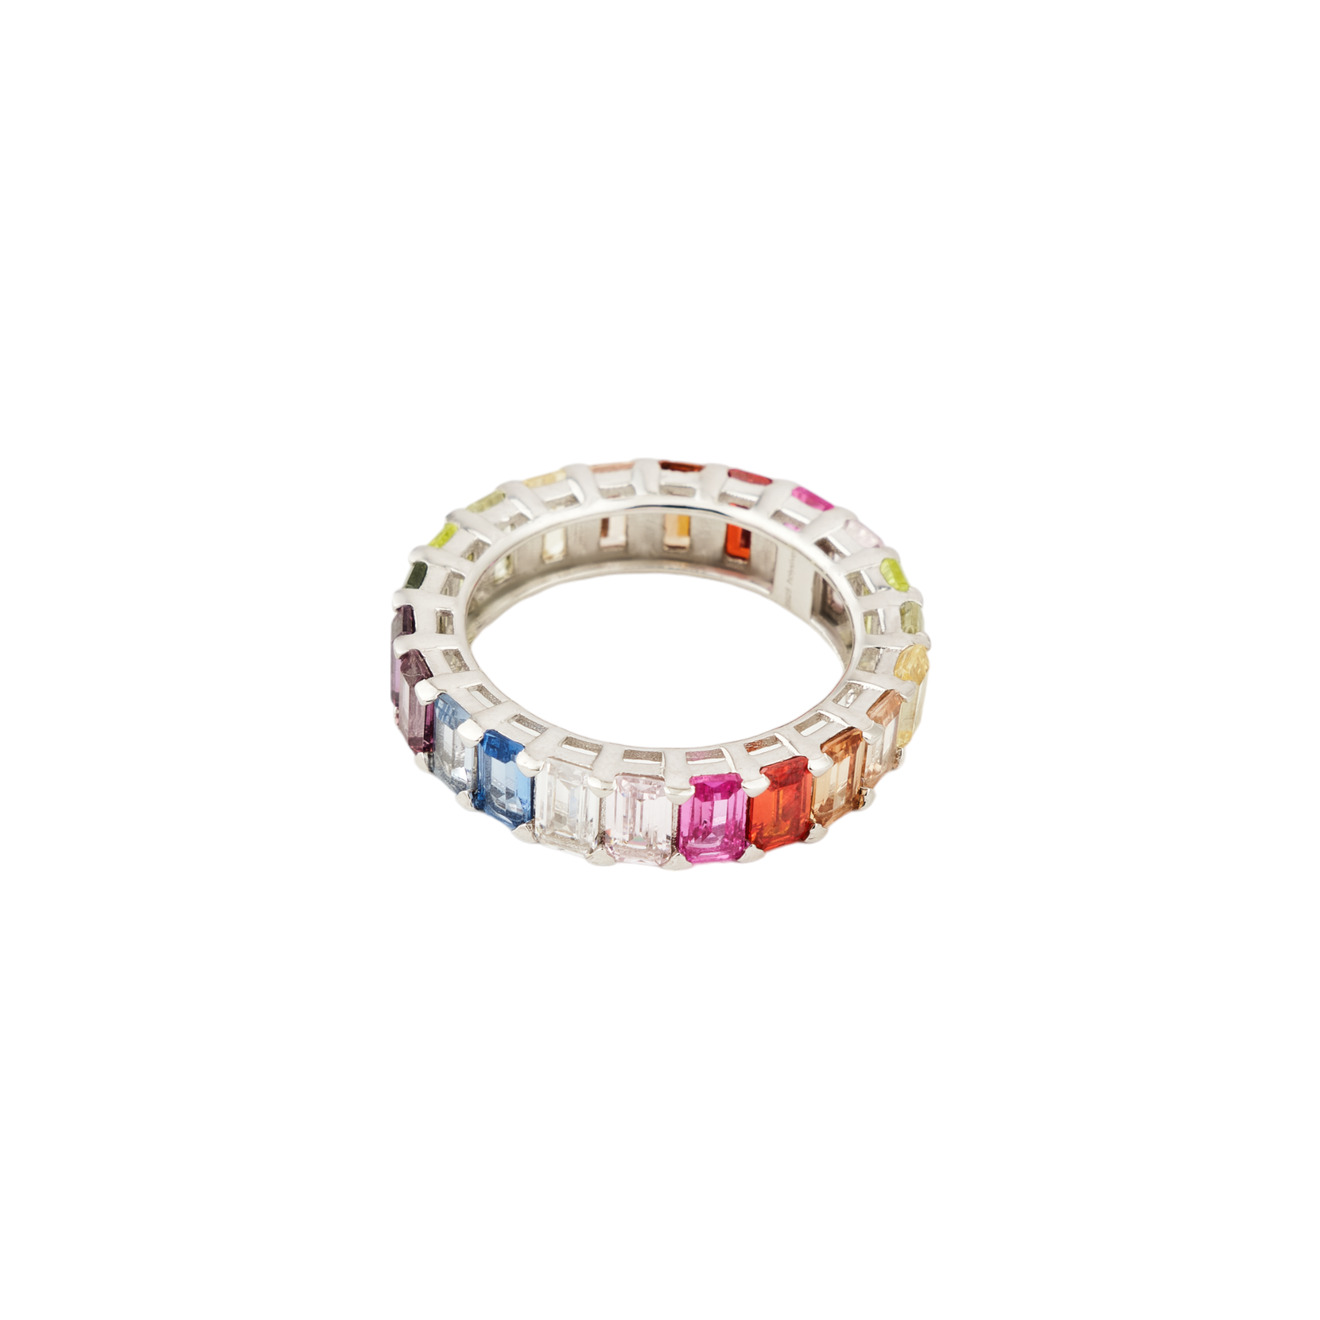 Holy Silver Кольцо из дорожки из разноцветных кристаллов holy silver кольцо дорожка из розовых и белых кристаллов разной формы